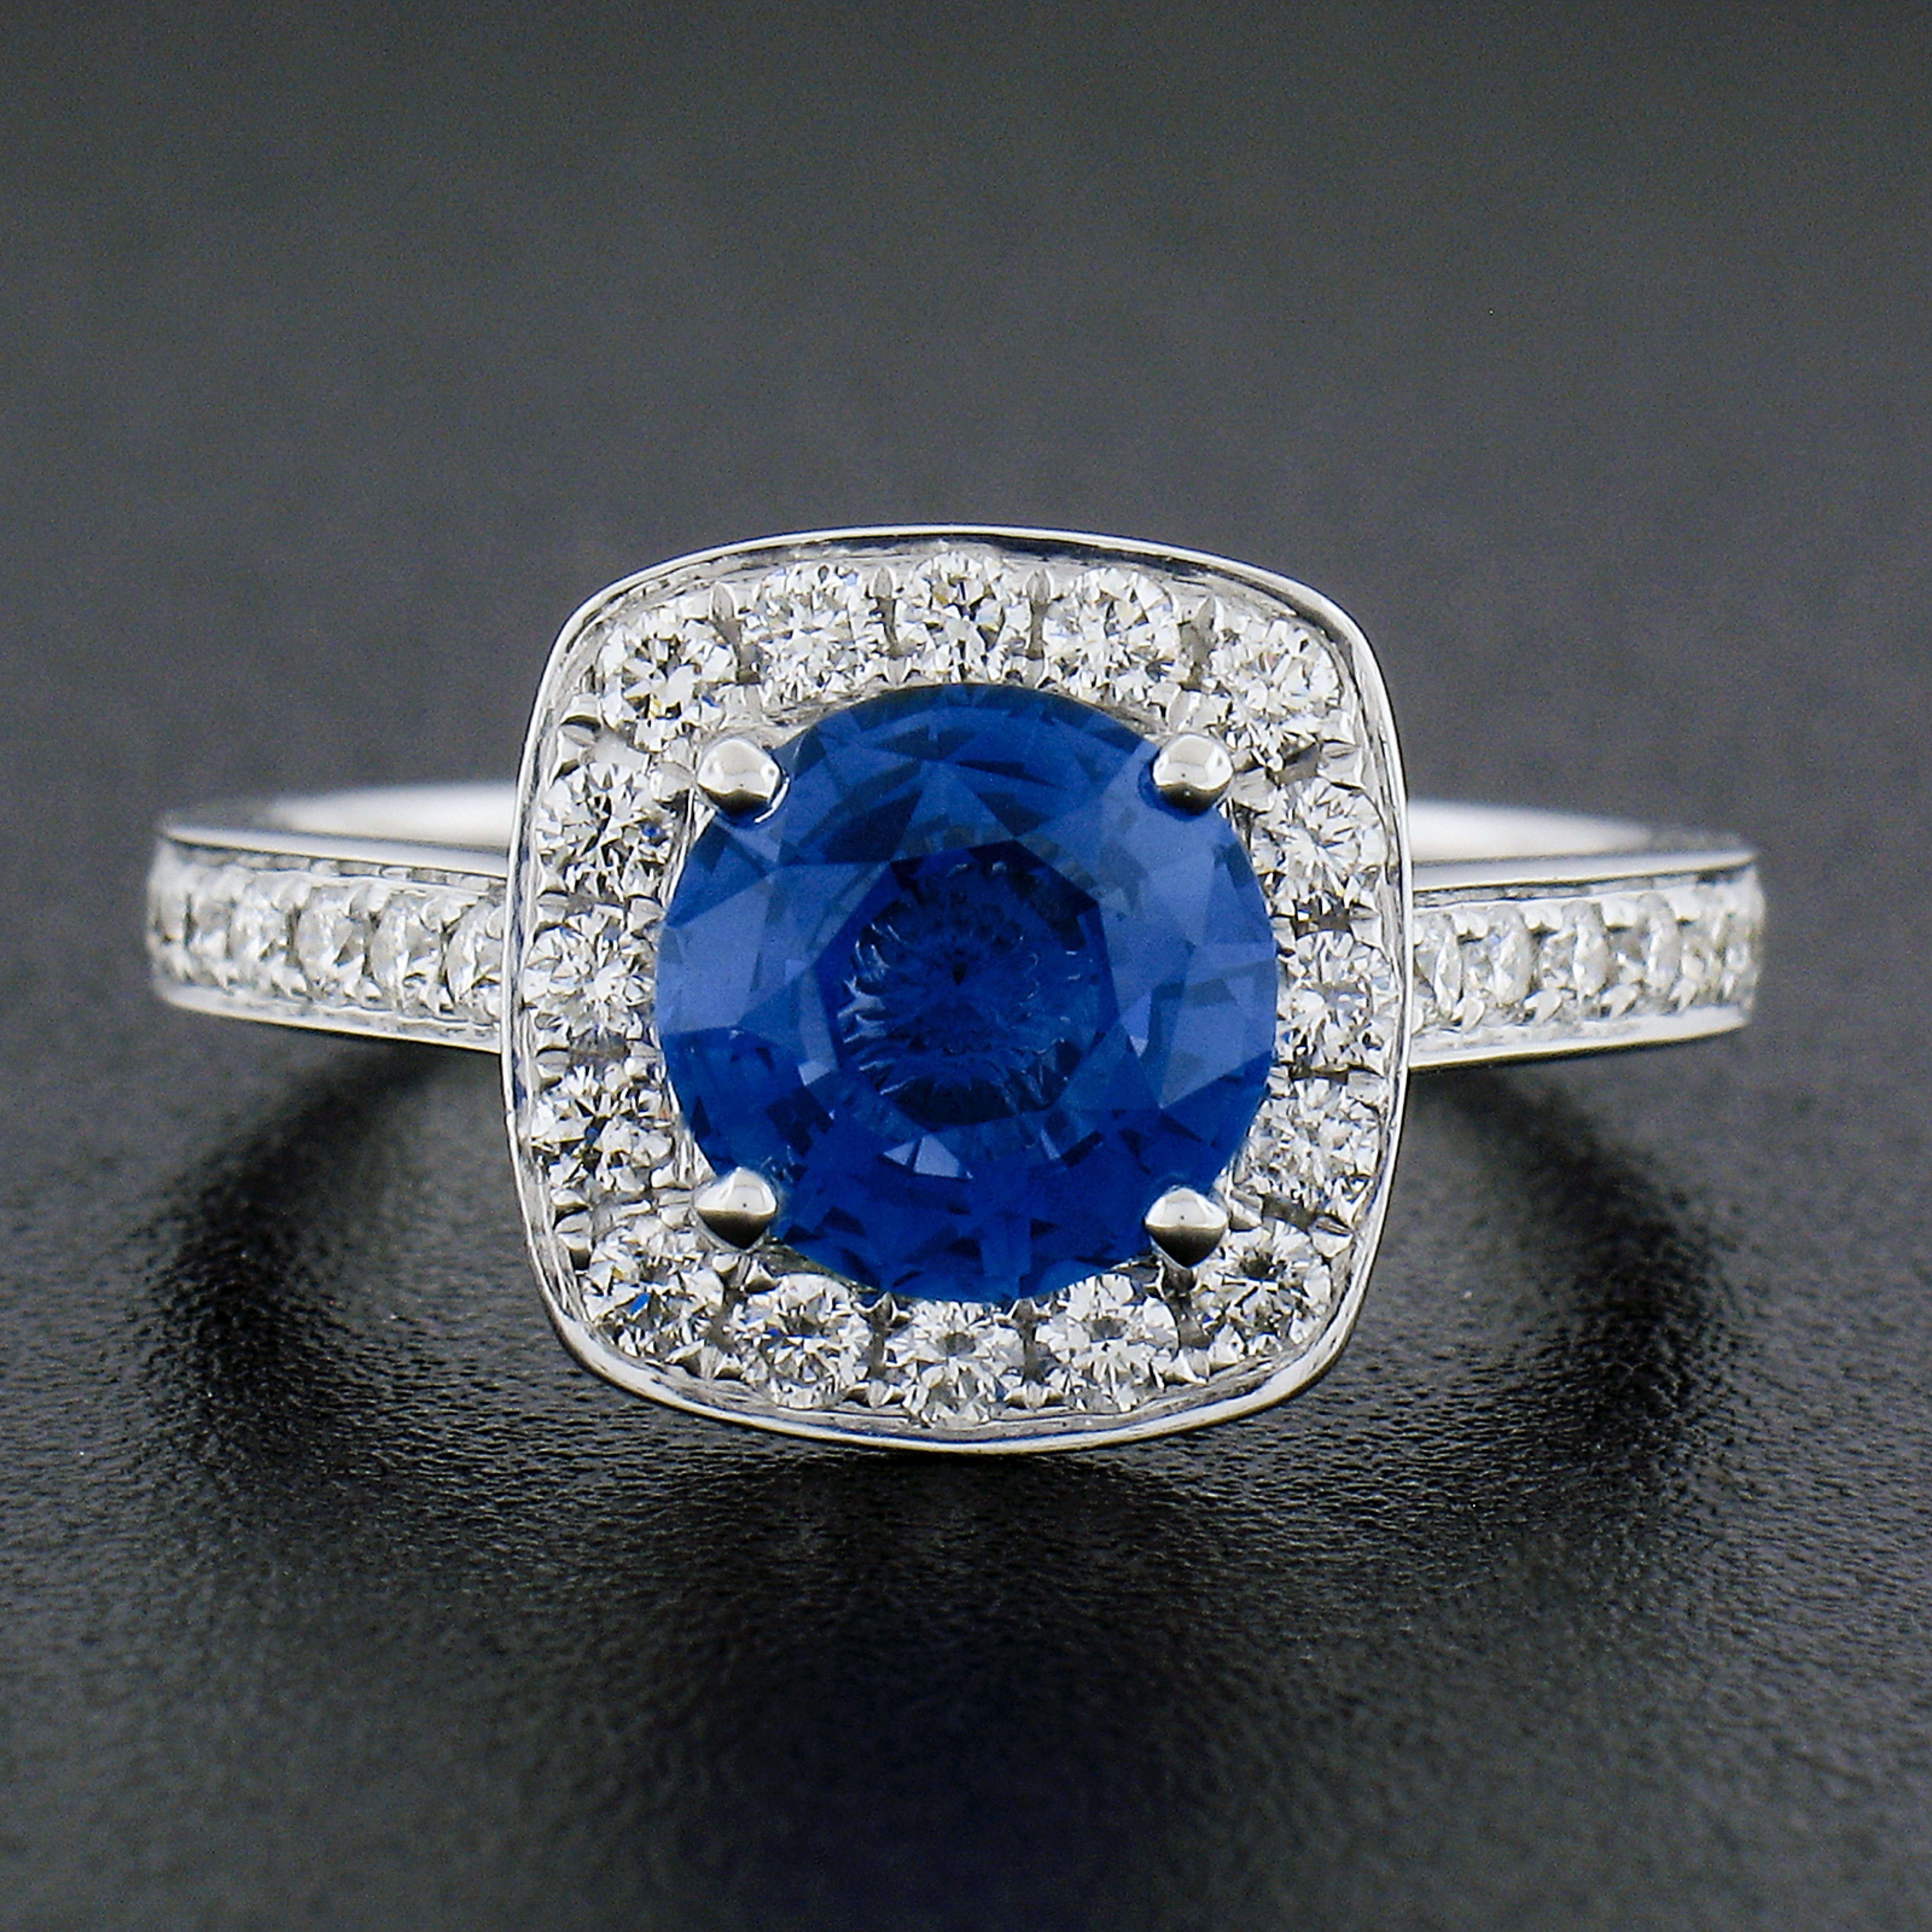 --Pierre(s) :...
(1) Saphir véritable naturel - taille ronde et brillante - serti - couleur bleue magnifique -1.89ct (exact - certifié)
** Voir les détails de la certification ci-dessous pour des informations complètes
(32) Diamants naturels